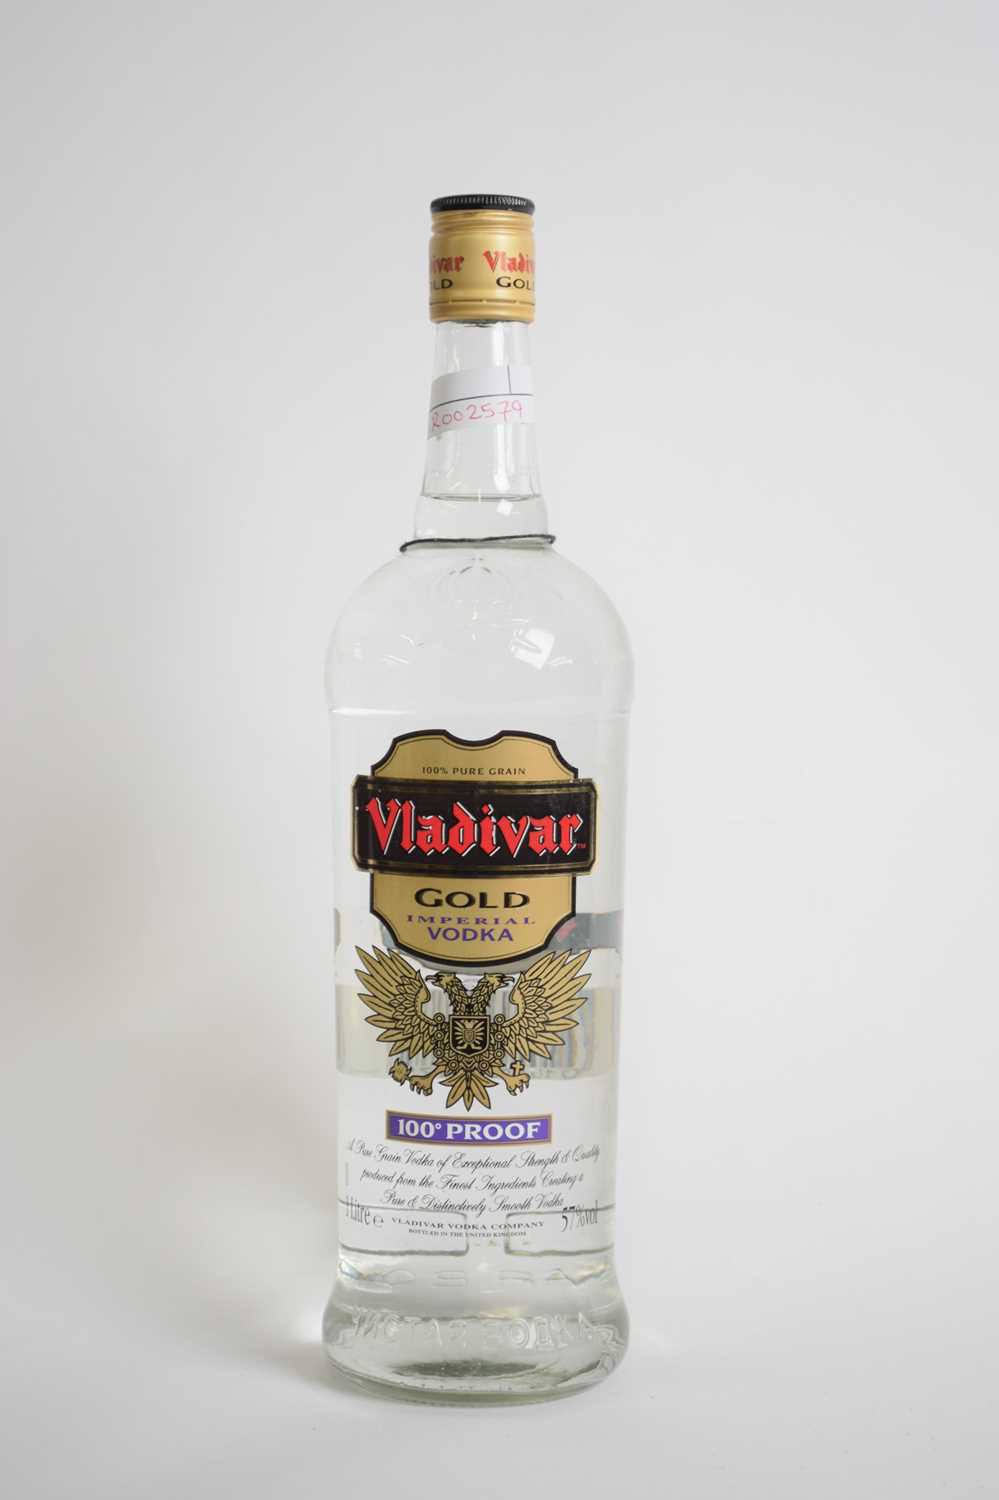 One bottle Vladivar Imperial Vodka, 1 ltr - Image 2 of 3